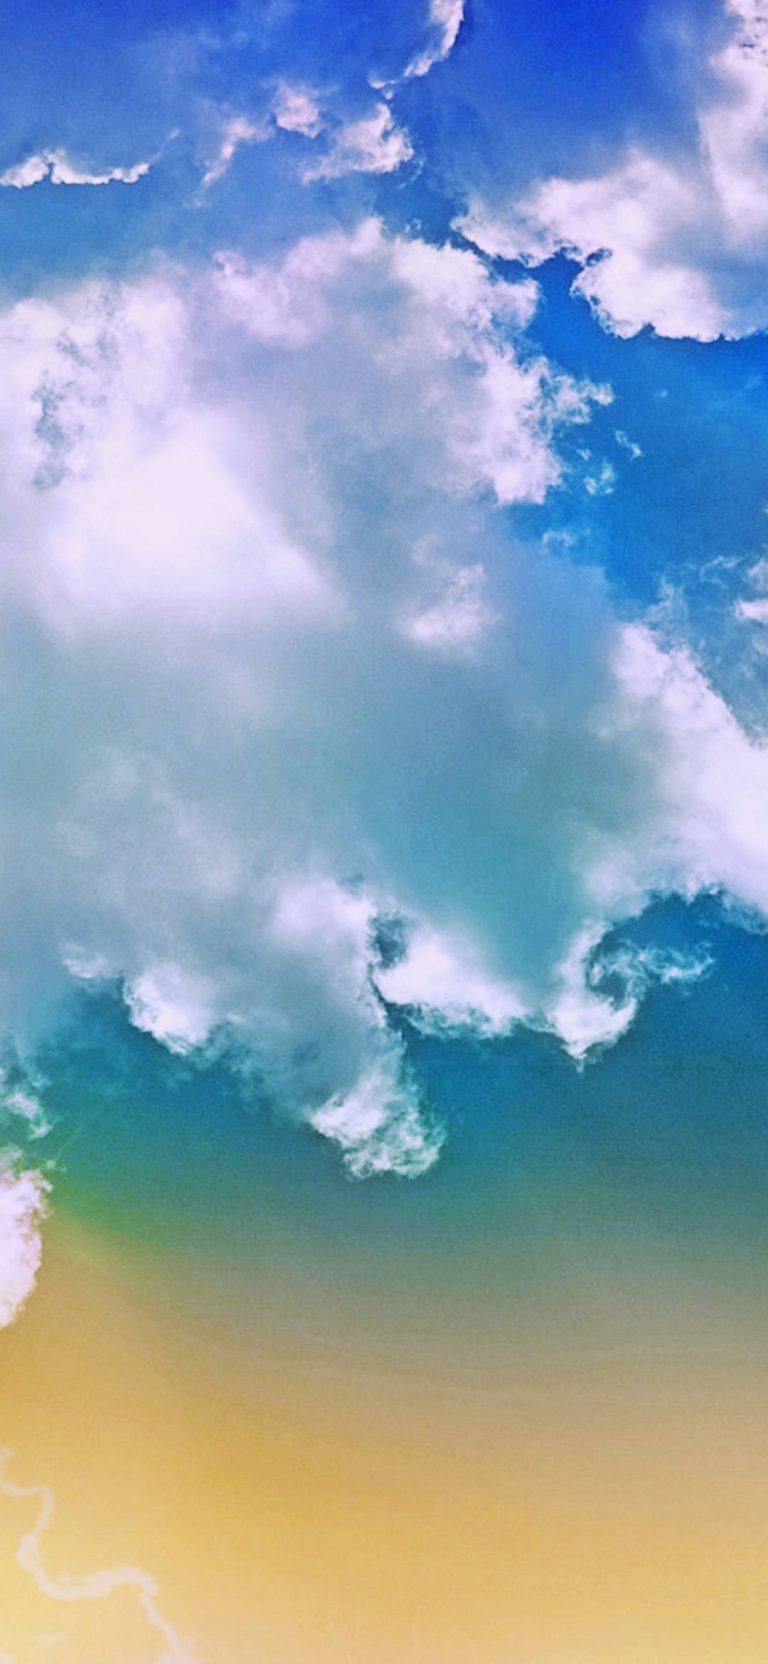 fonds d'écran ultra hd pour android,ciel,nuage,jour,bleu,cumulus